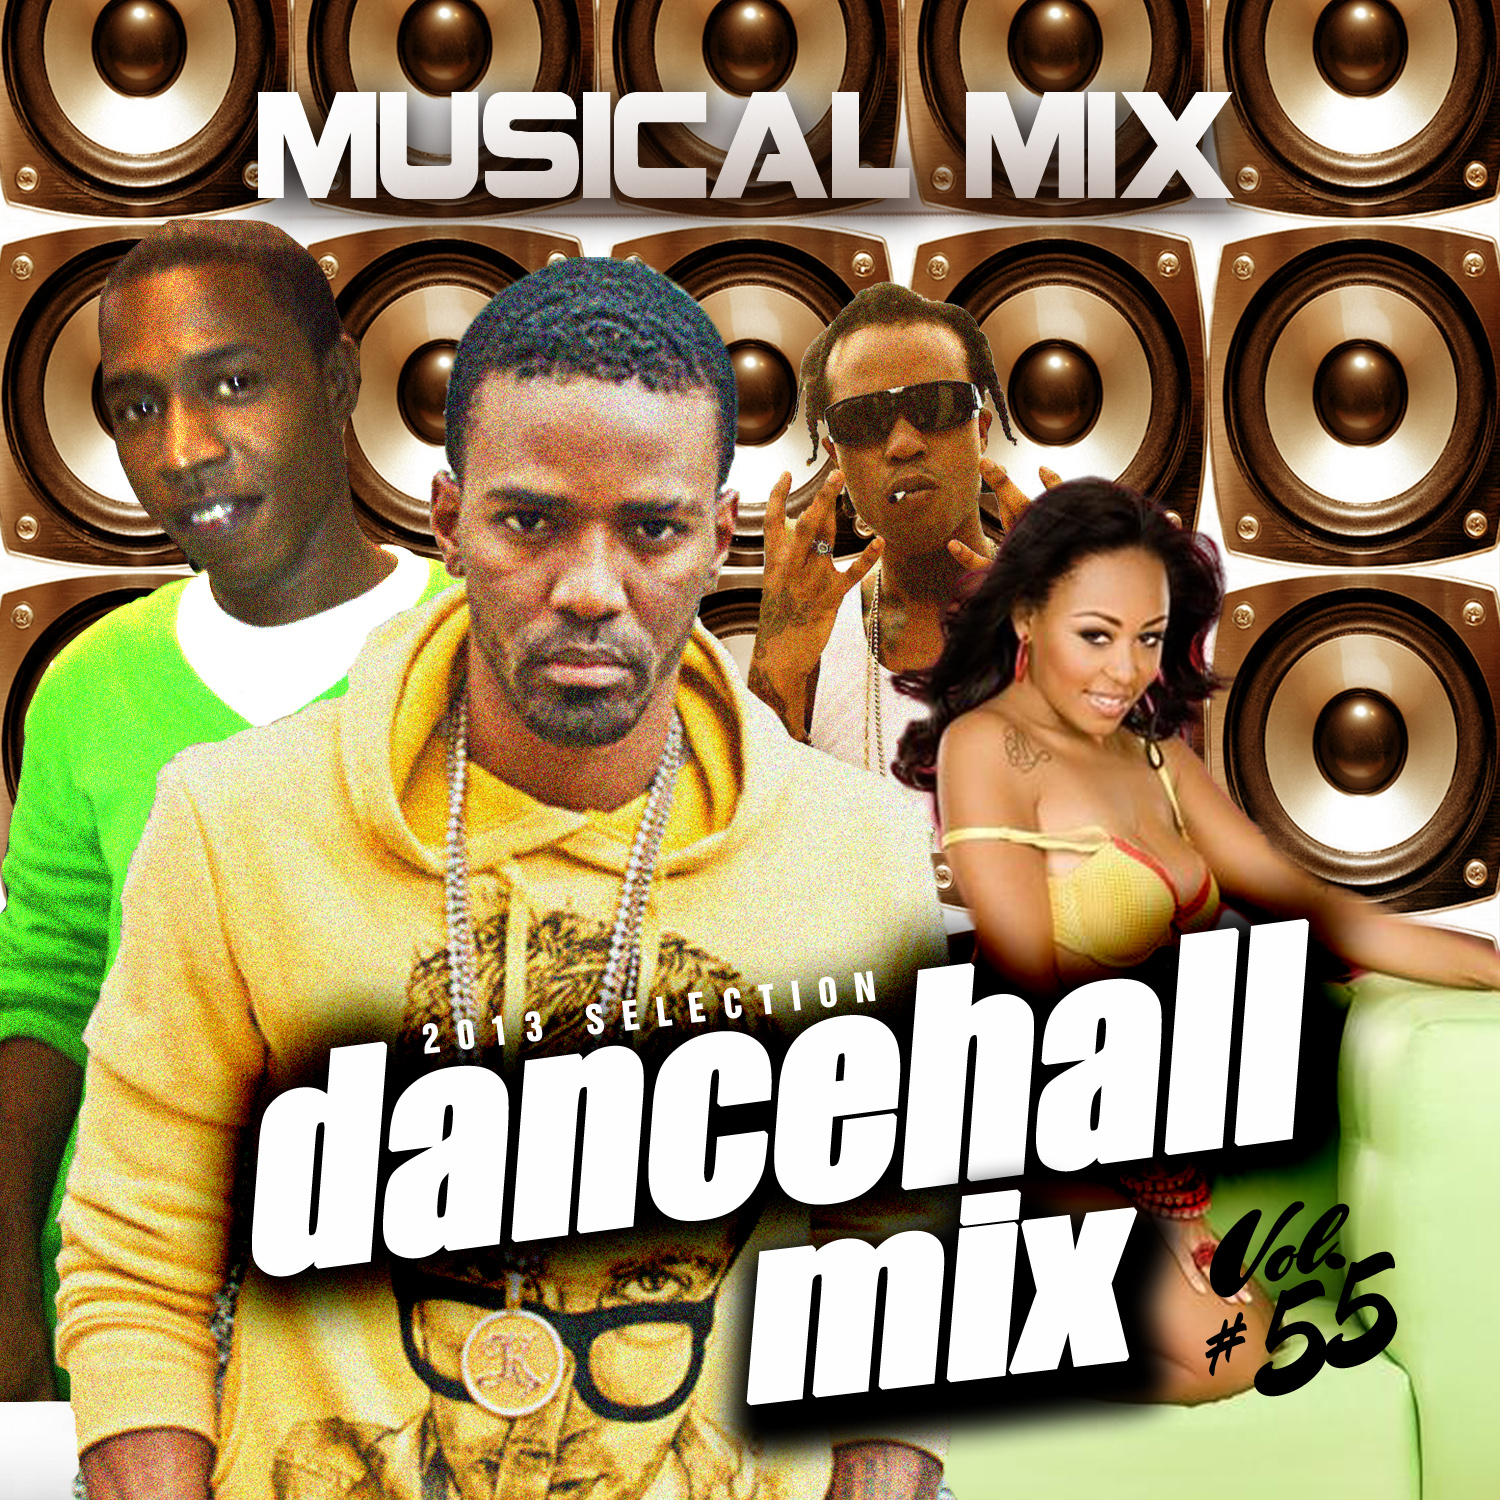 Dancehall #55 | Dj Musical Mix